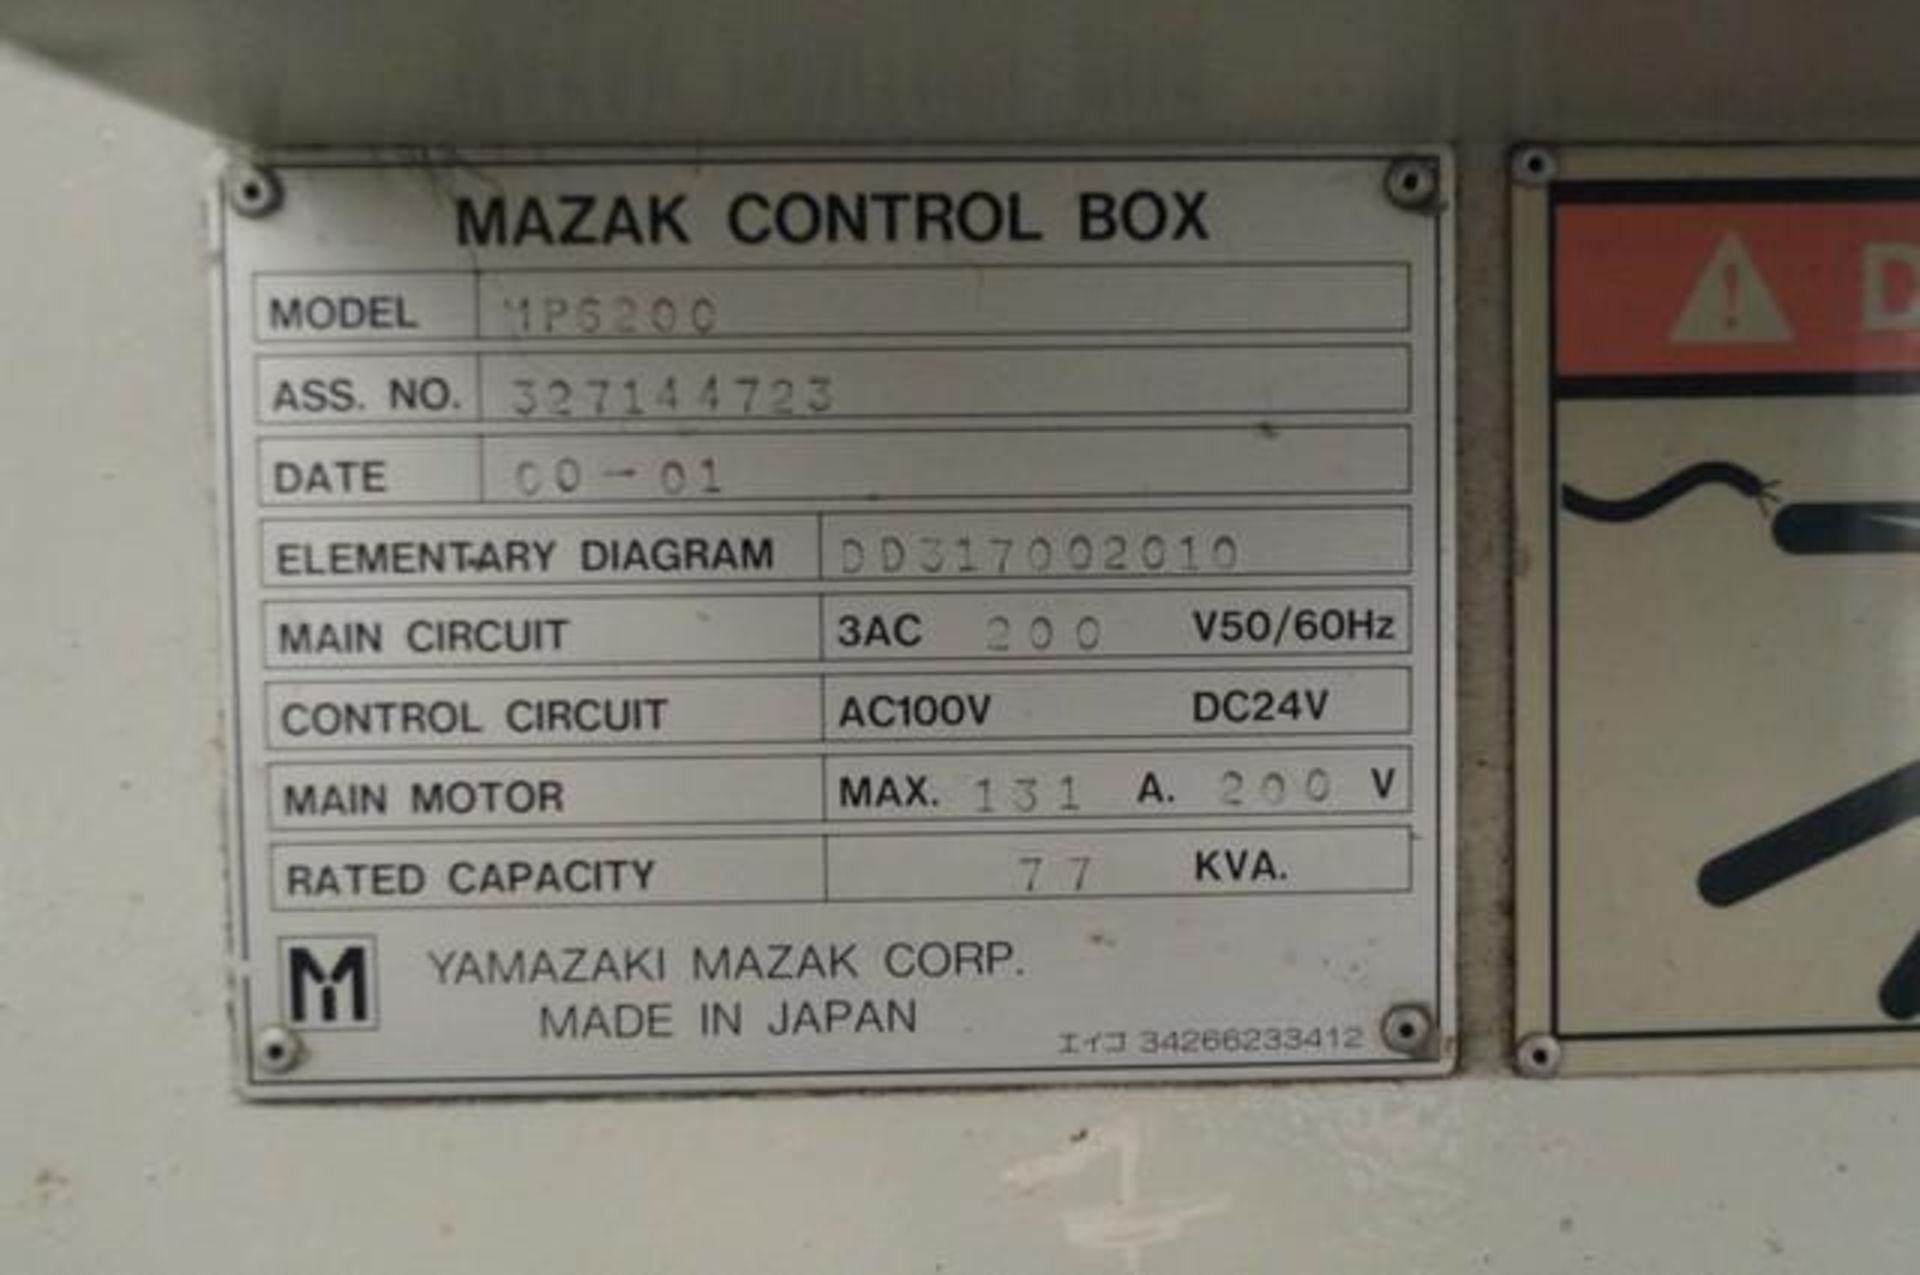 2001 MAZAK MULTIPLEX 6200 Horizontal Turning Center - Image 9 of 9